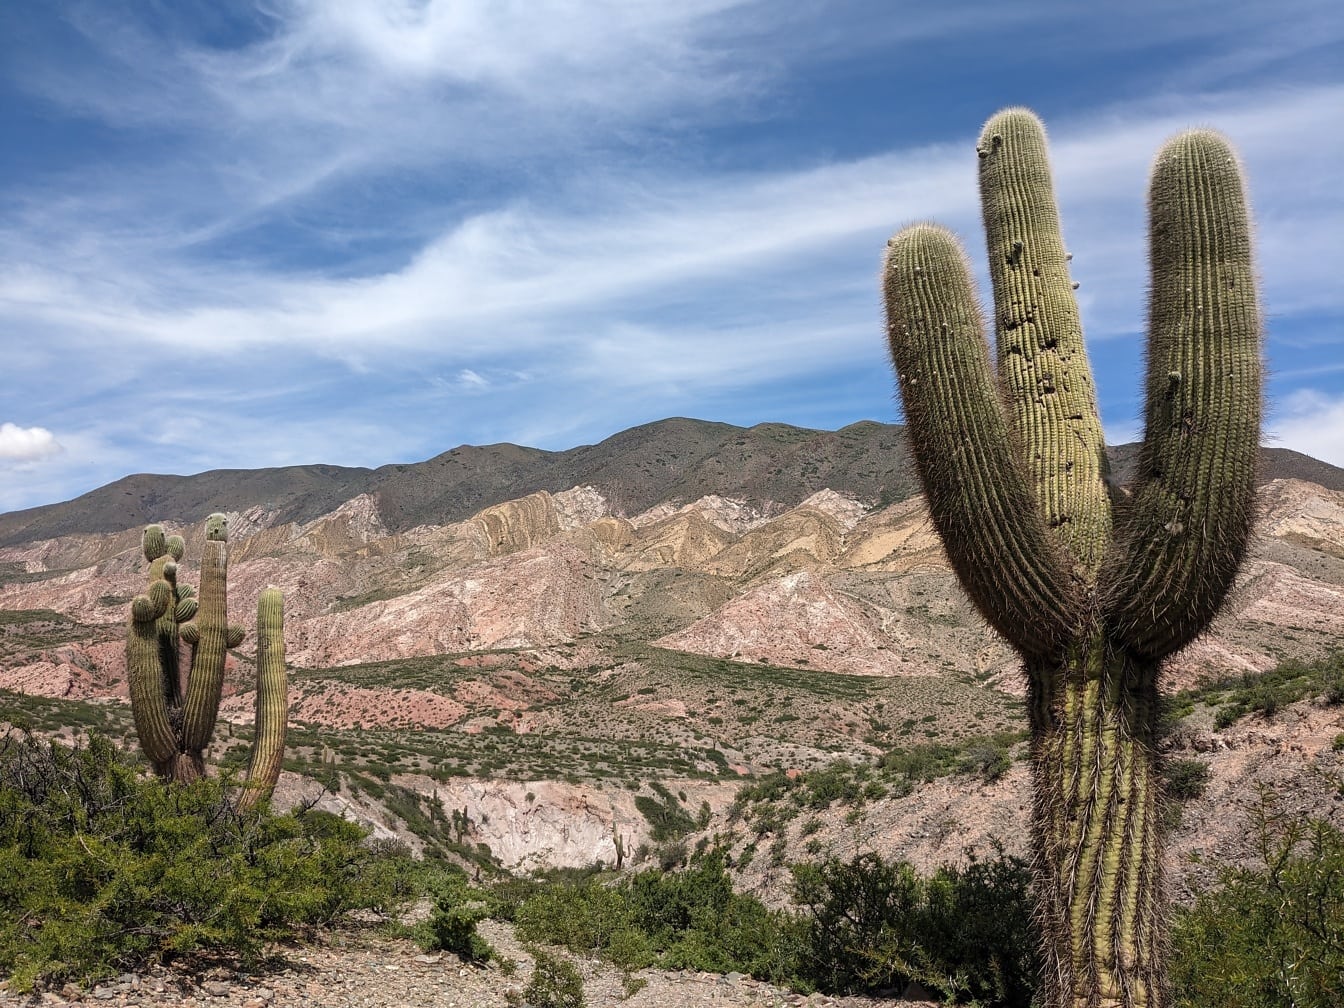 Il cactus saguaro (Carnegiea gigantea) in un habitat naturale desertico